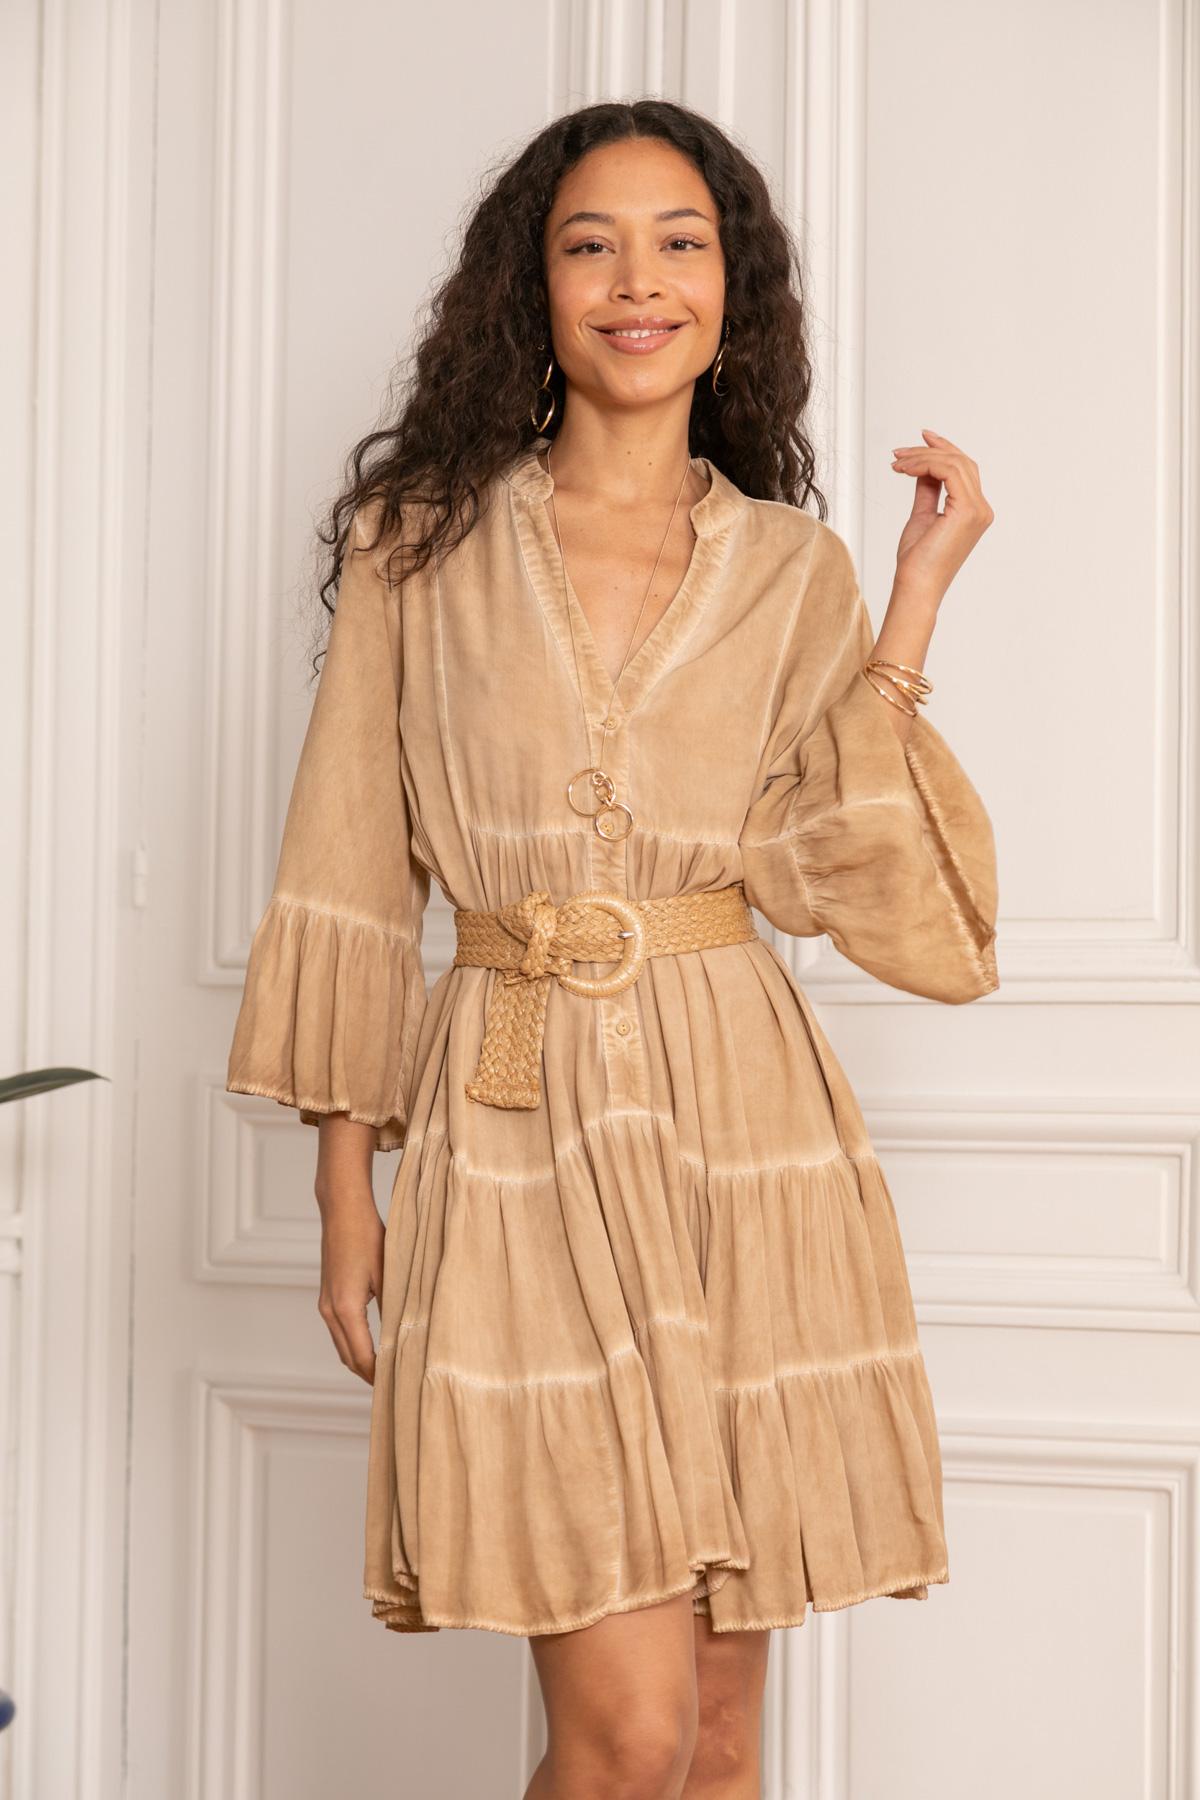 Robes courtes Femme Kaki LAST QUEEN 8985-0008 #c Efashion Paris